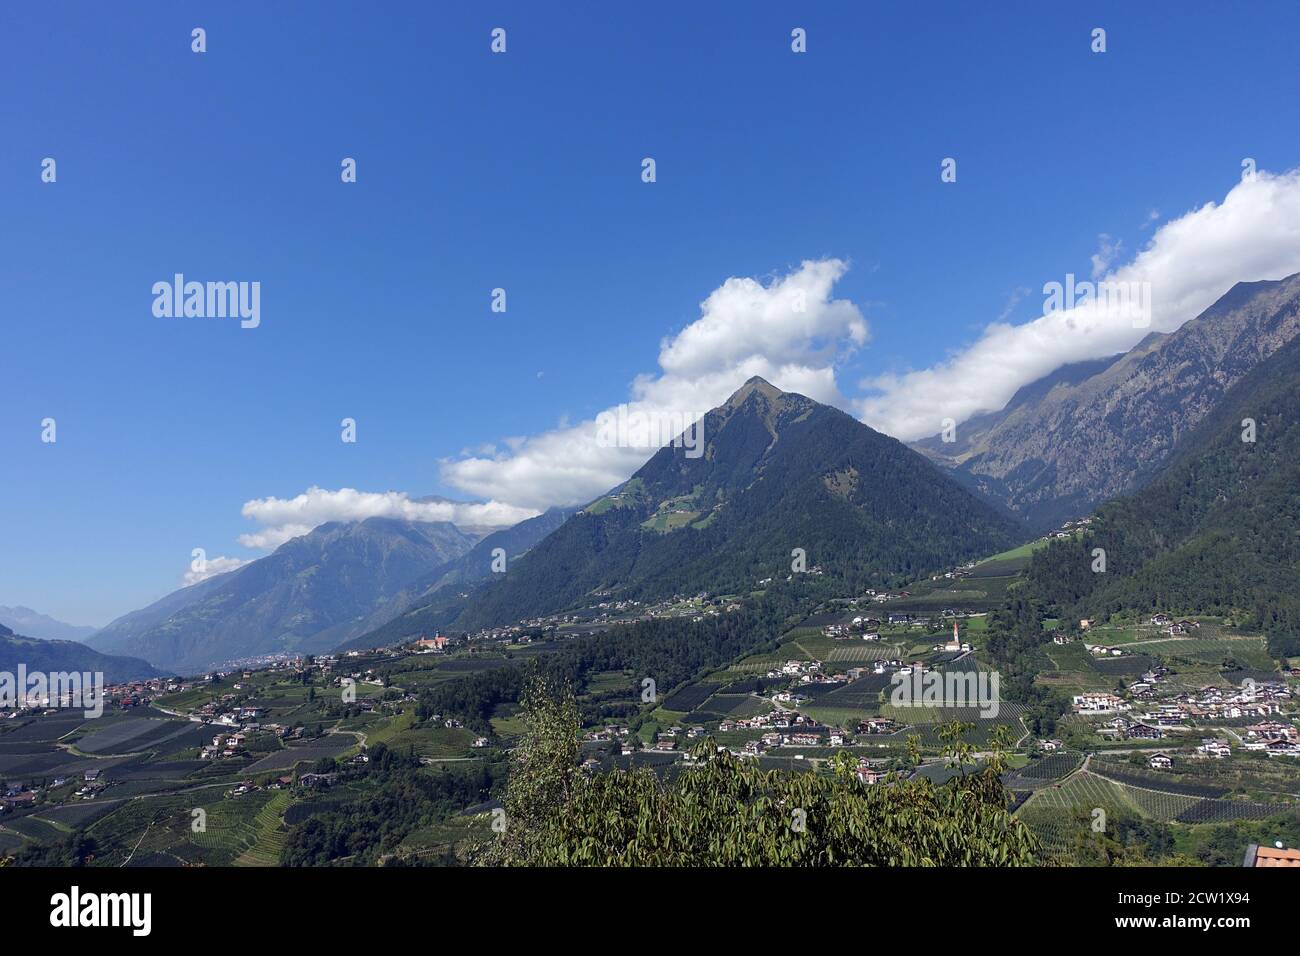 Blick vom Schenner Waalweg über das Passeier Tal auf die Berge der Texel-Gruppe,Schenna,Südtirol, Italien Banque D'Images